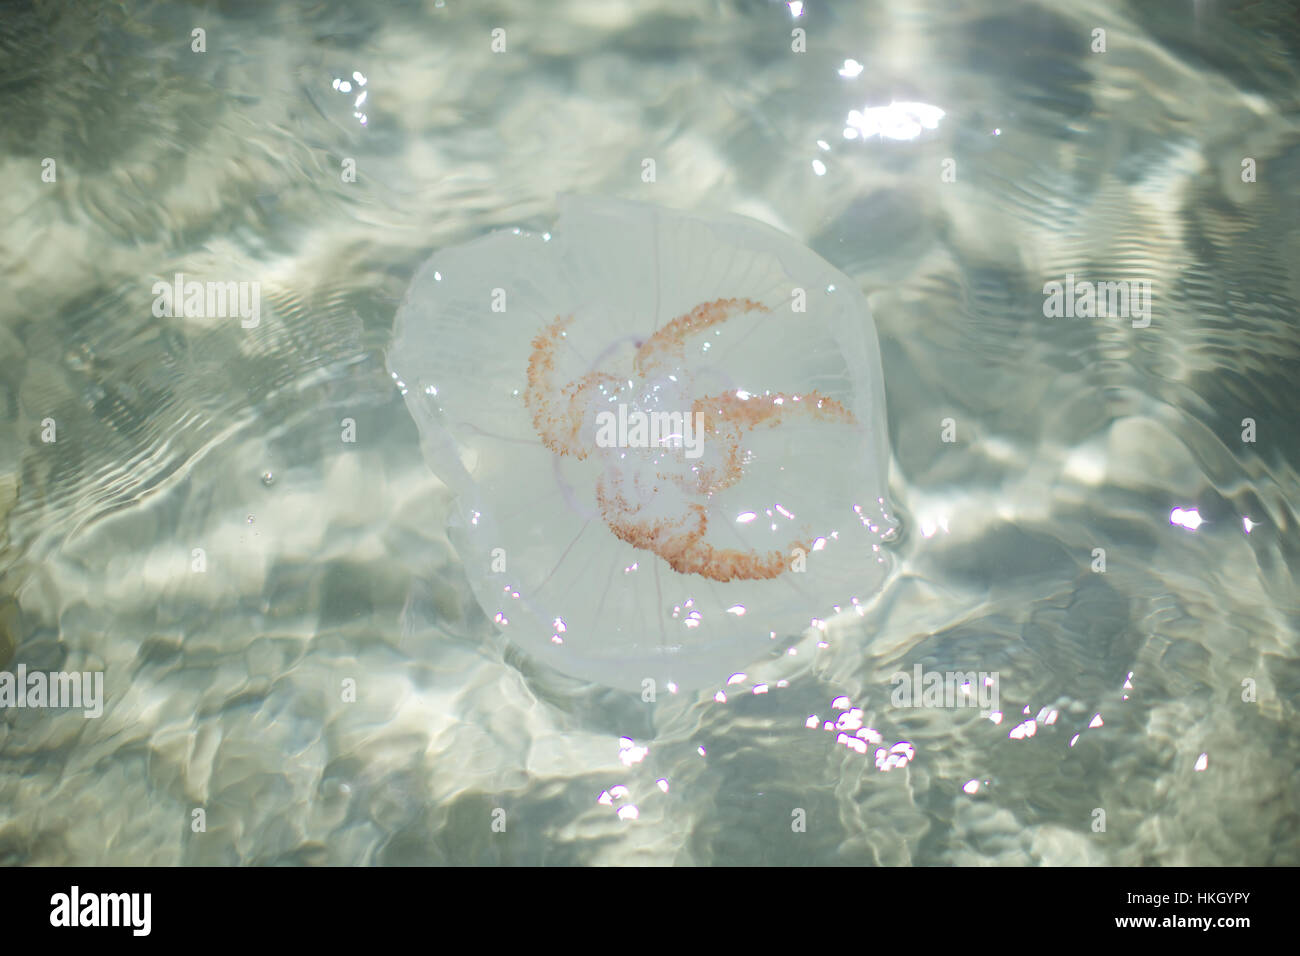 jellyfish underwater. aquatic, rippled, water, clean. Stock Photo